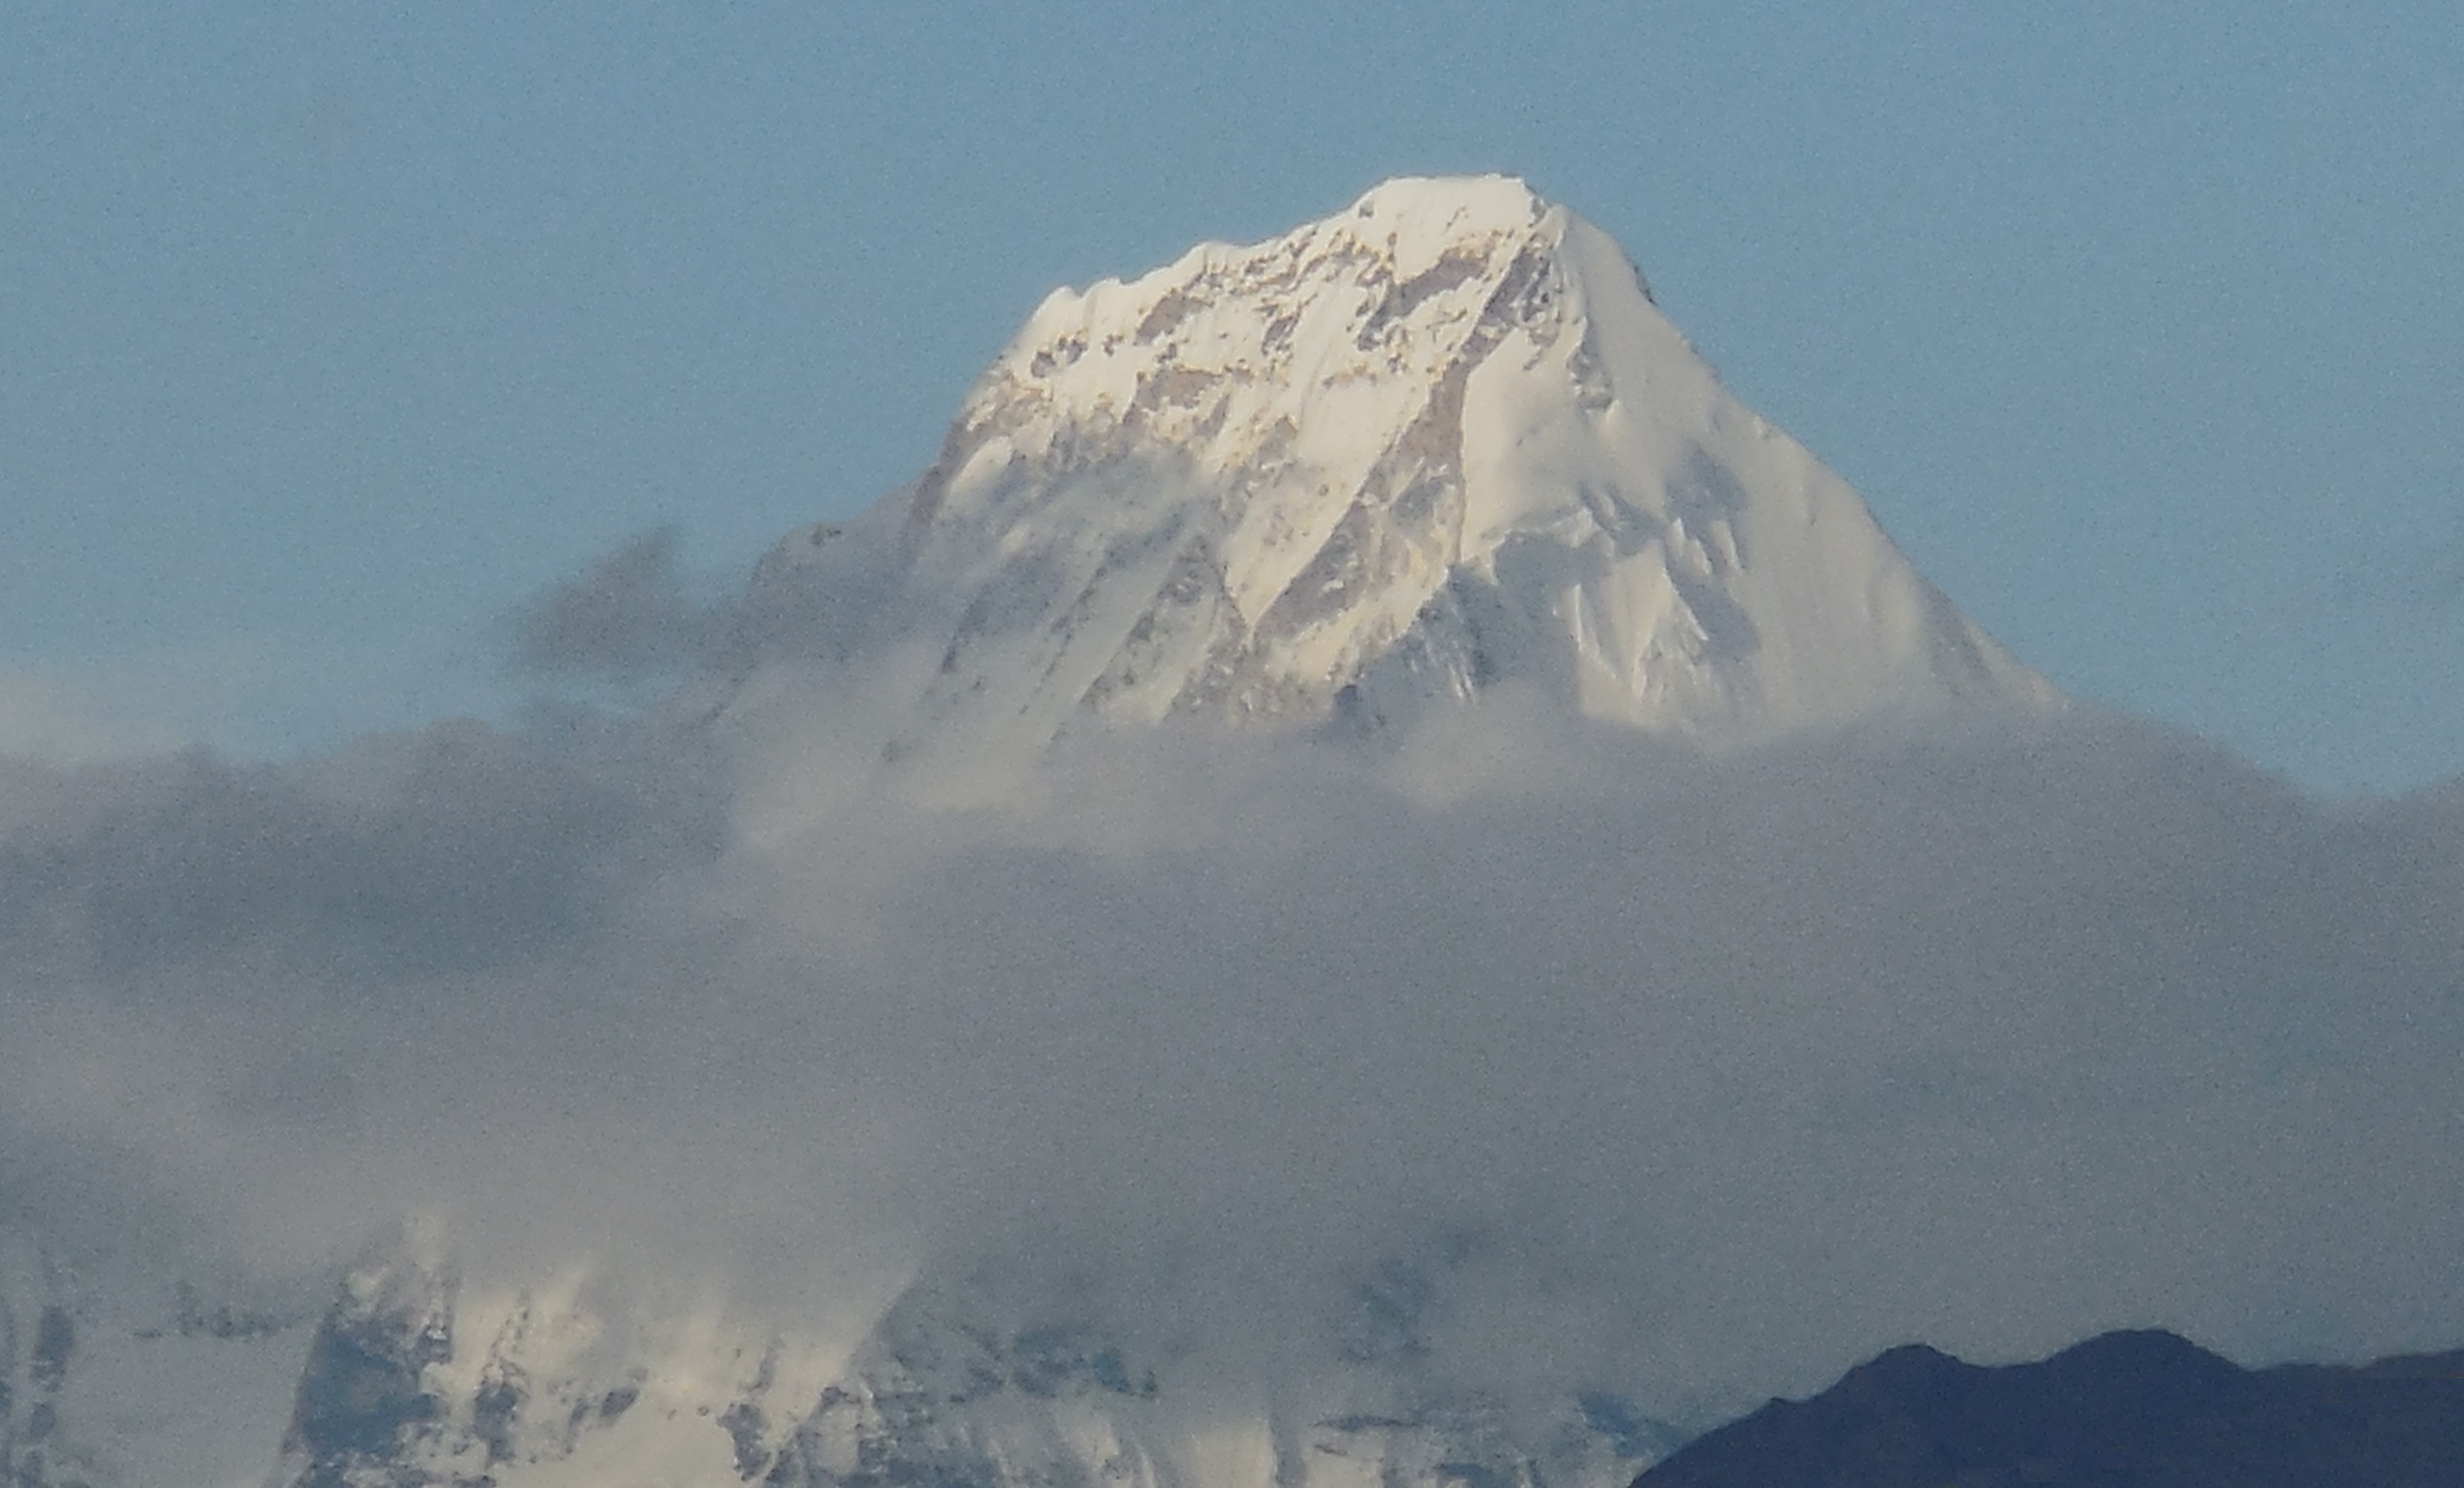 Eastern Peak of Jomolhari Mountain